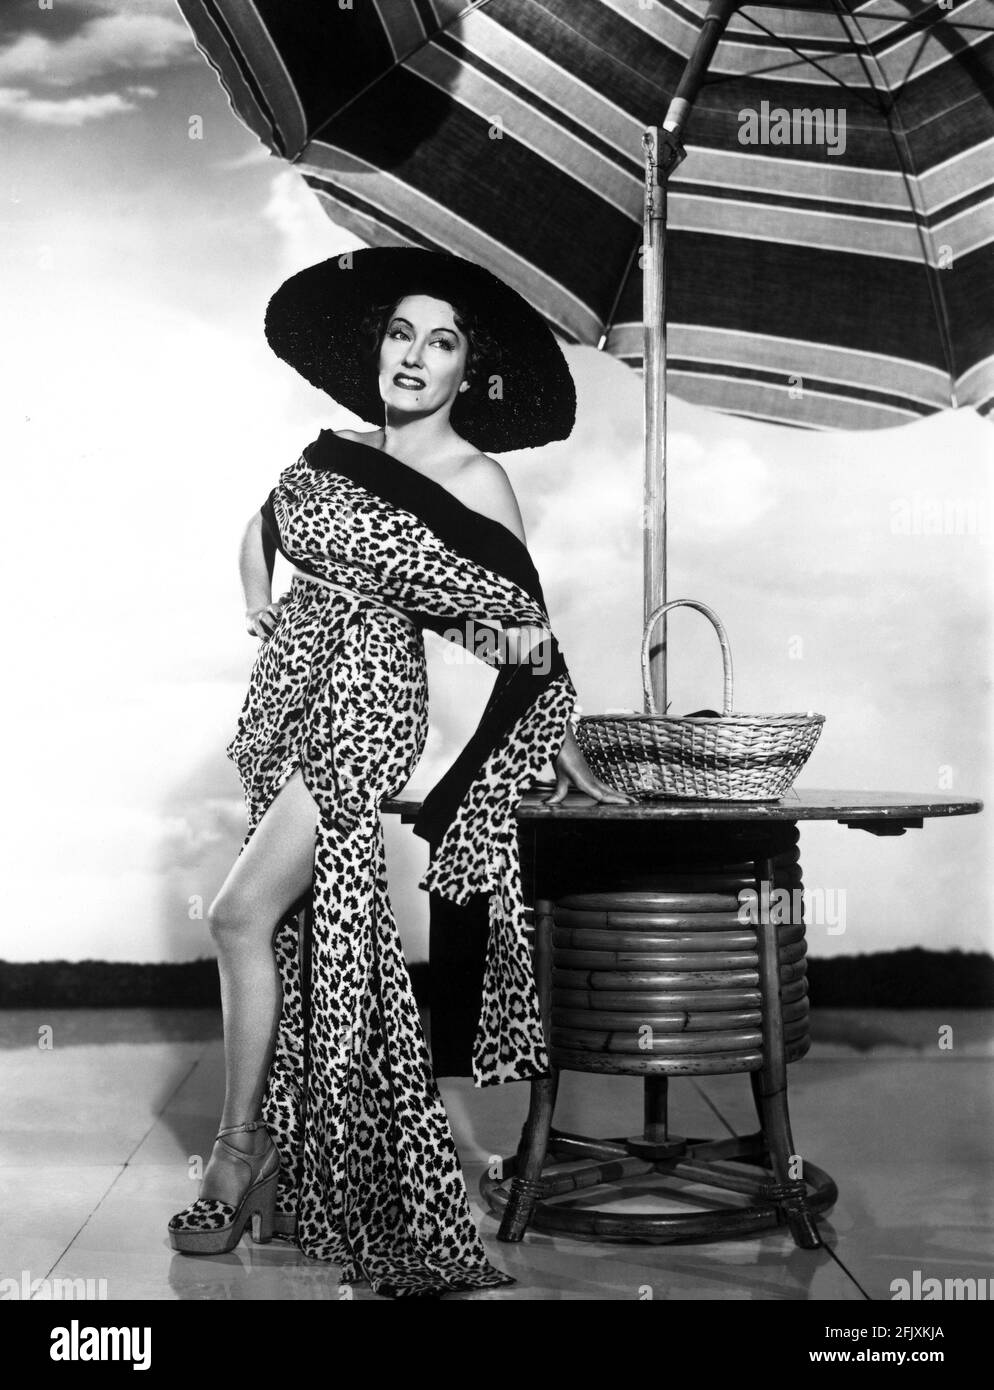 1951 , USA : The movie actress GLORIA SWANSON ( 1898 - 1983 ) as Norma Desmond in SUNSET BOULEVARD ( Viale del Tramonto ) by Billy Wilder, costume by Edith HEAD , Paramount pubblicity still - FILM - CINEMA - attrice cinematografica - leopardo - leopardato - maculato - VAMP - leopard - leopard-skin - leoparded - sandali - sandals - bambou - cappello di rafia - hat - neo - mole - spalla - spalle - shoulder - shoulders - ombrellone da spiaggia - beach-umbrella - leggy pose - gambe - gamba - leg - legs - giardino - garden - DIVA - DIVINA - DIVINE - Hollywood on Hollywood  - copricostume da bagno , Stock Photo